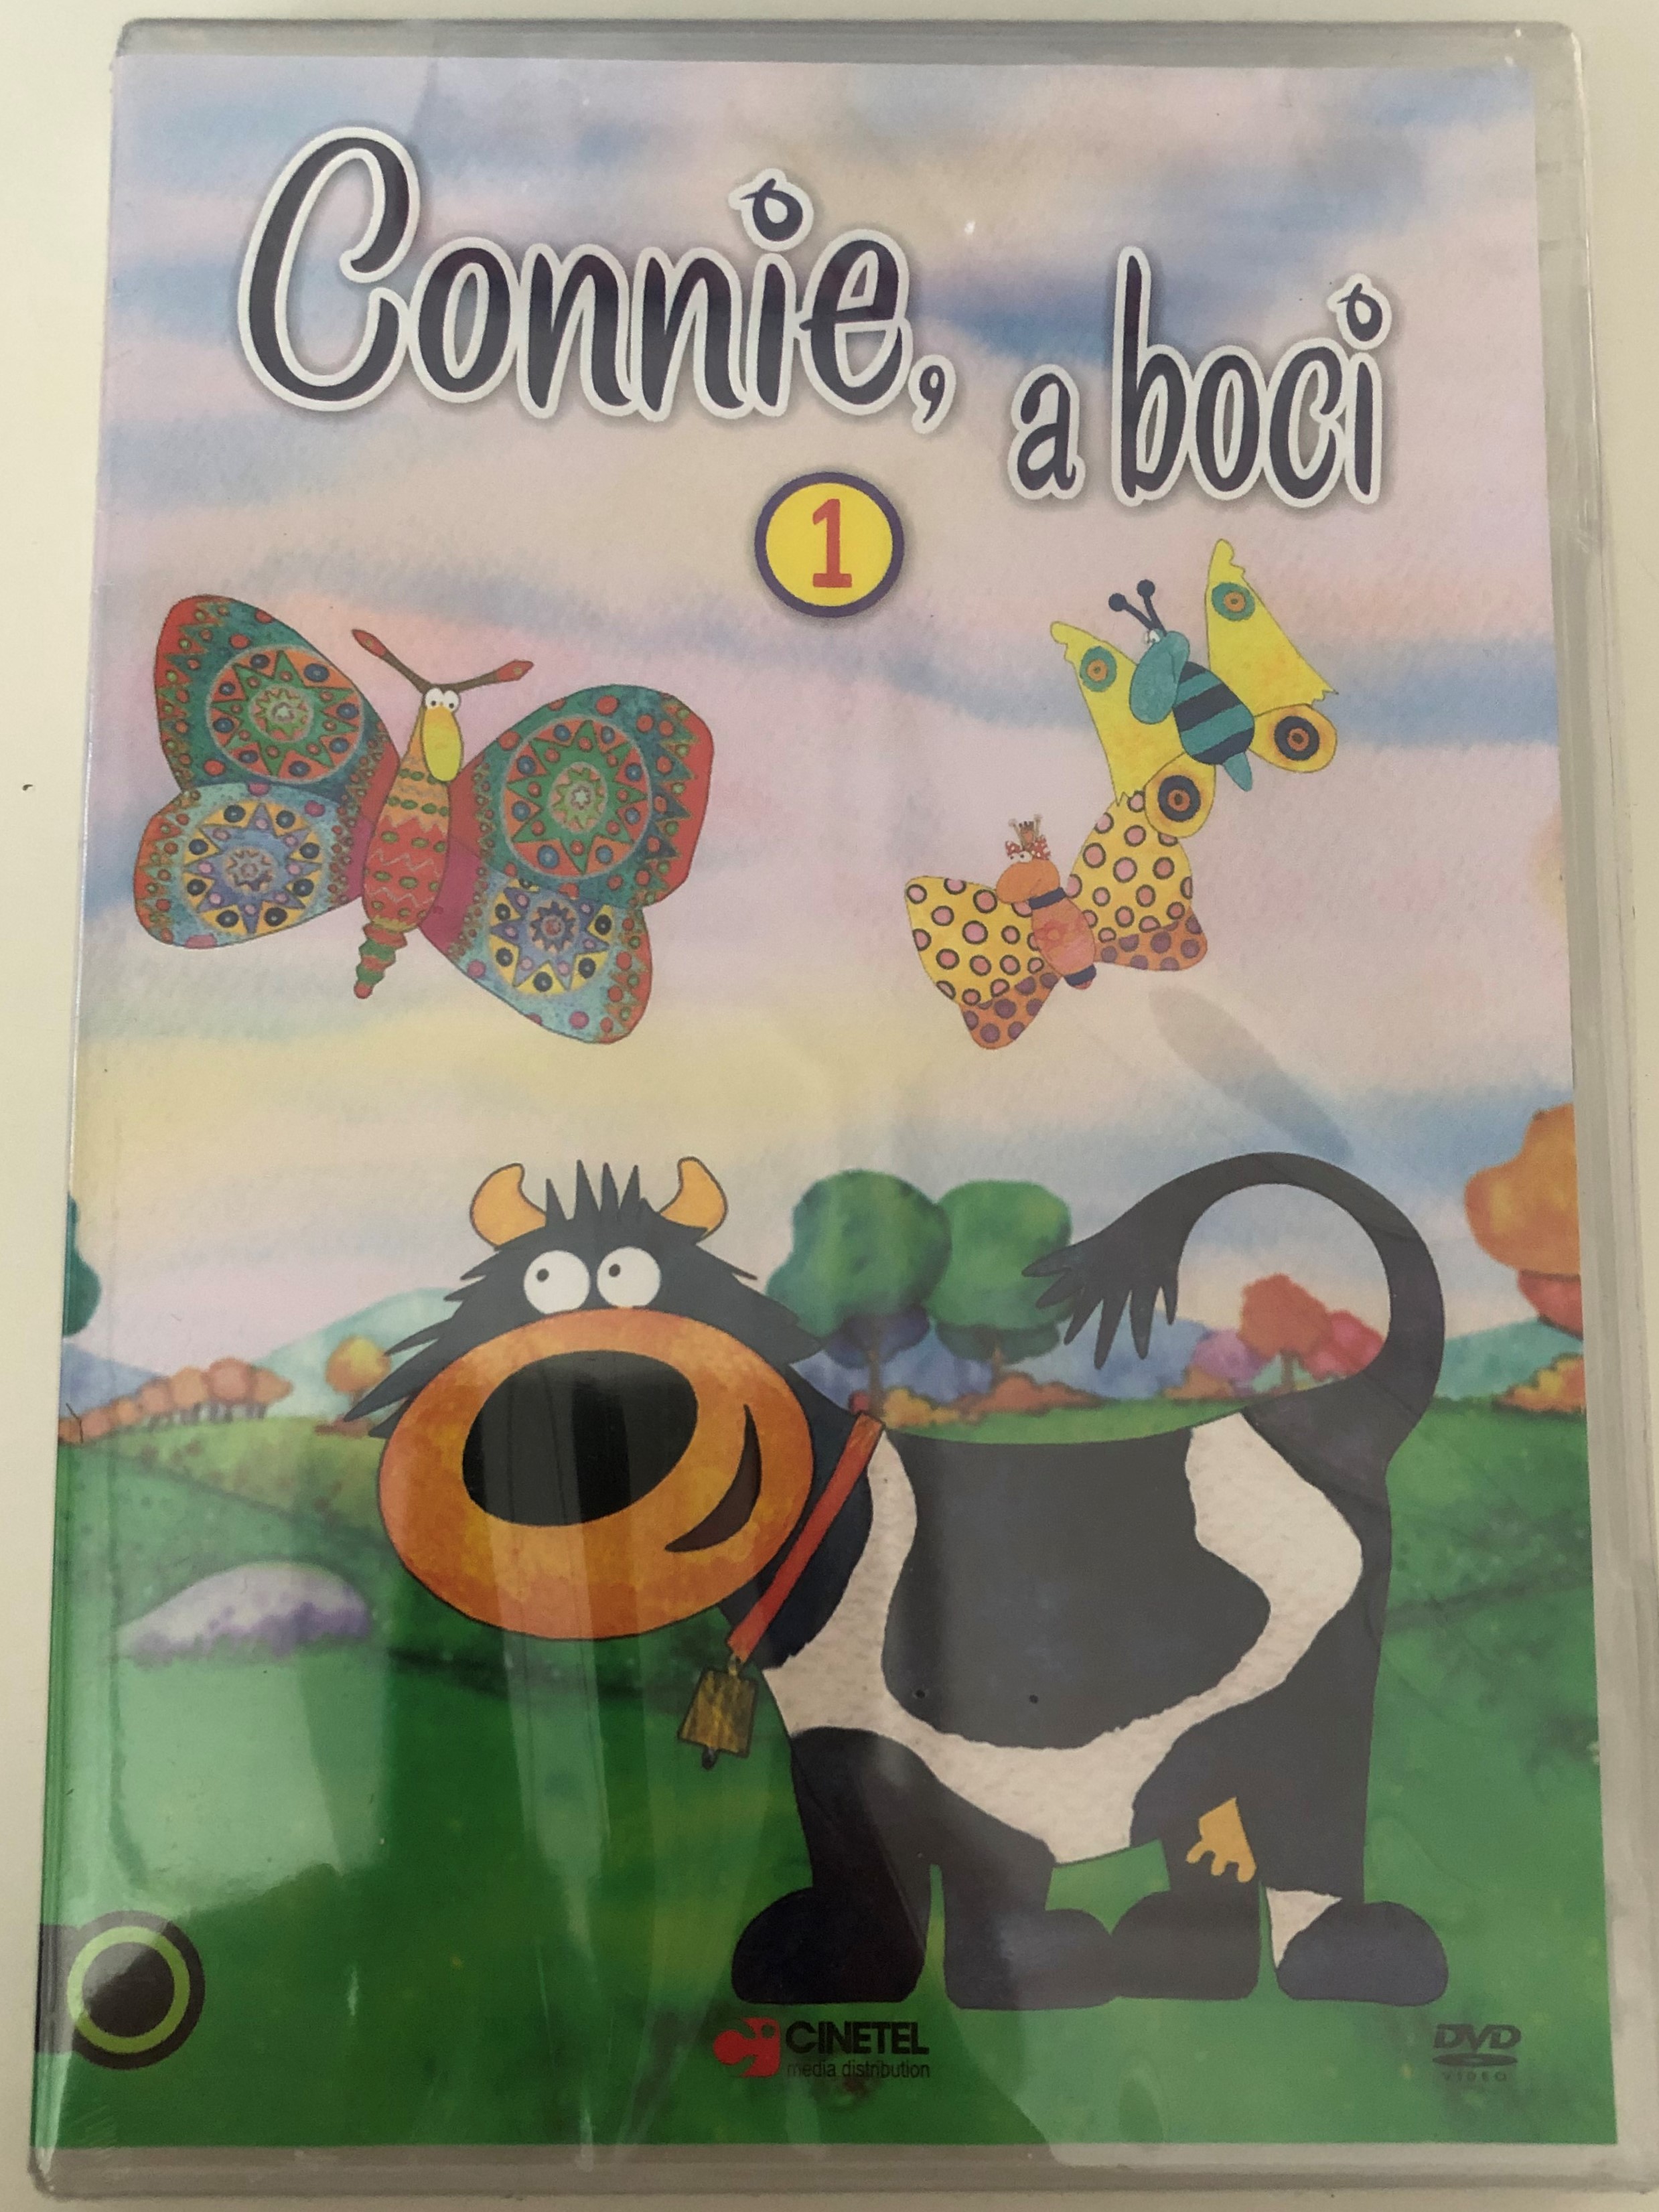 connie-the-cow-1-dvd-2002-connie-a-boci-1-1.jpg